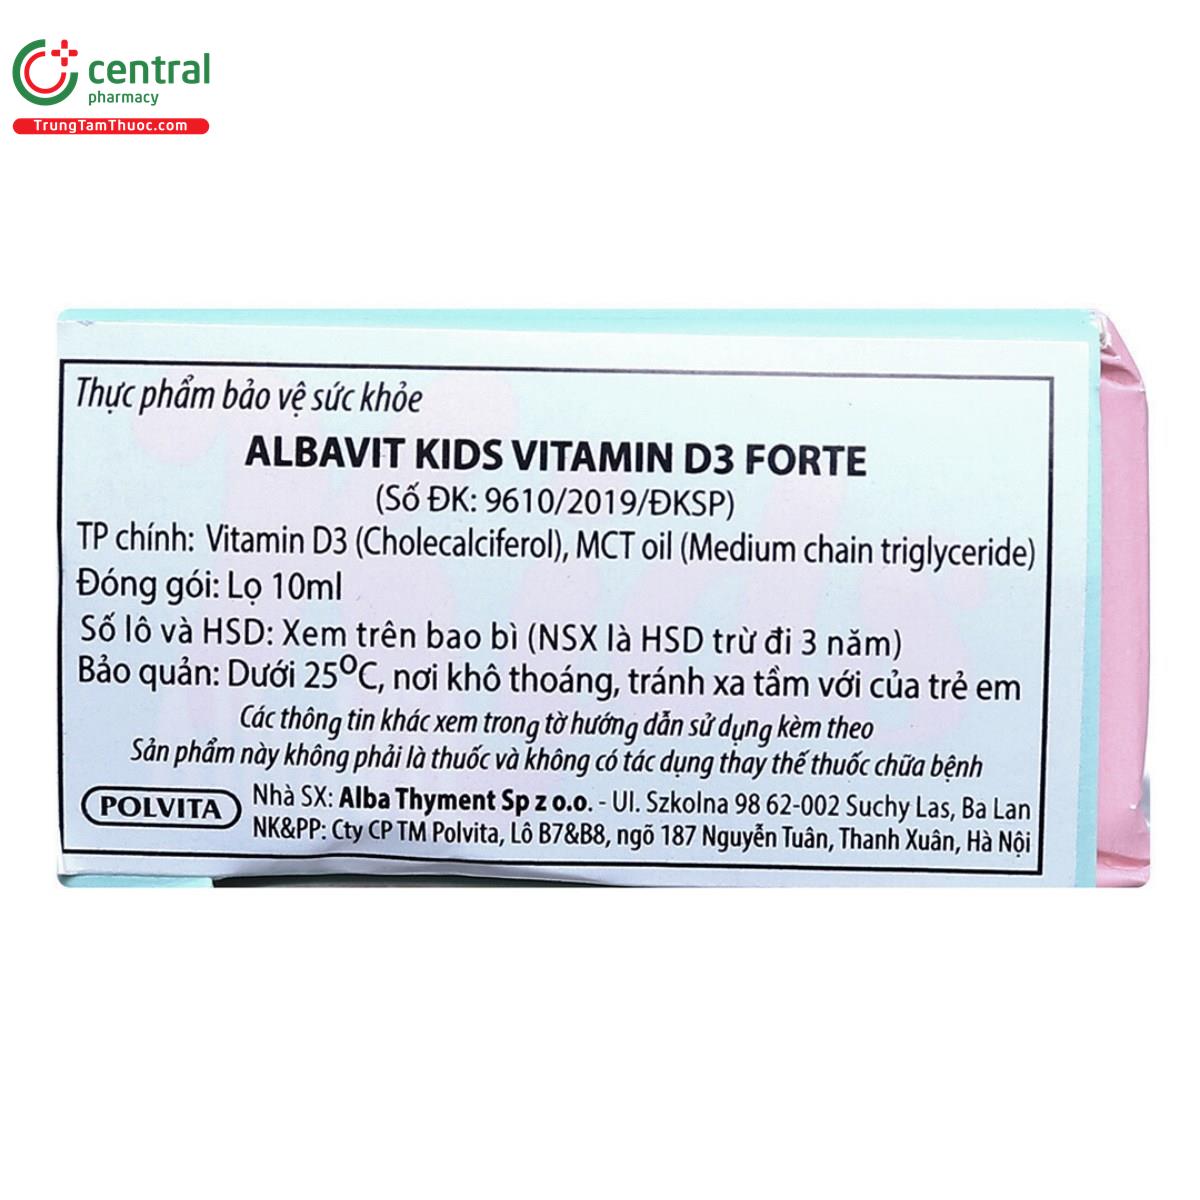 albavit kids vitamin d3 forte 6 L4510